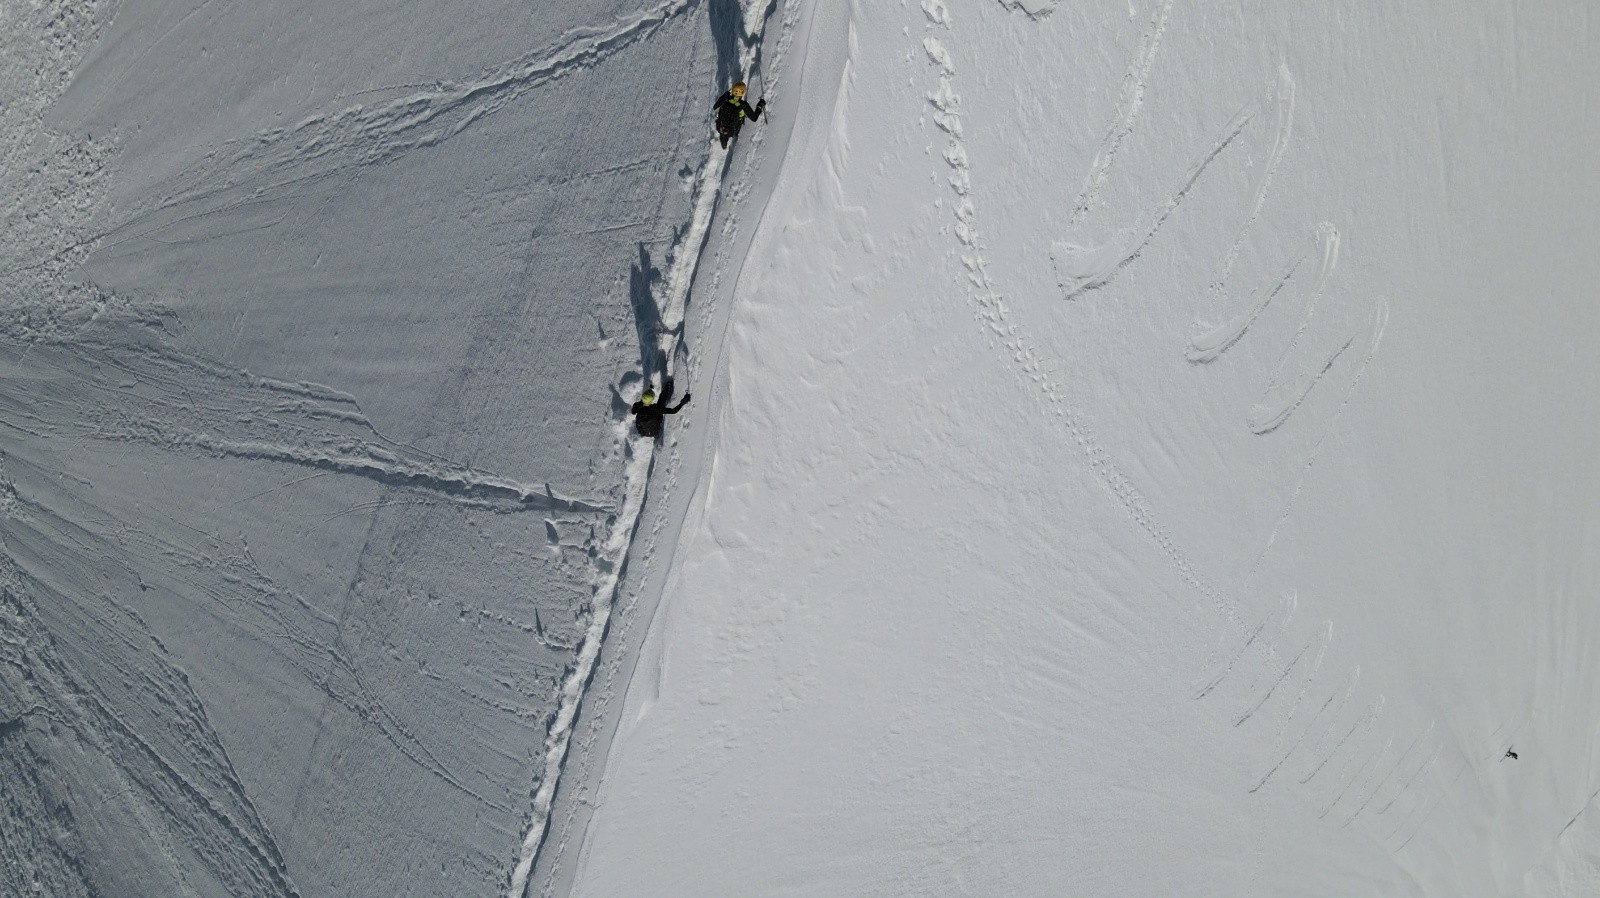 Perspective intéressante avec les alpinistes sur l'arête et le skieur loin en contrebas...